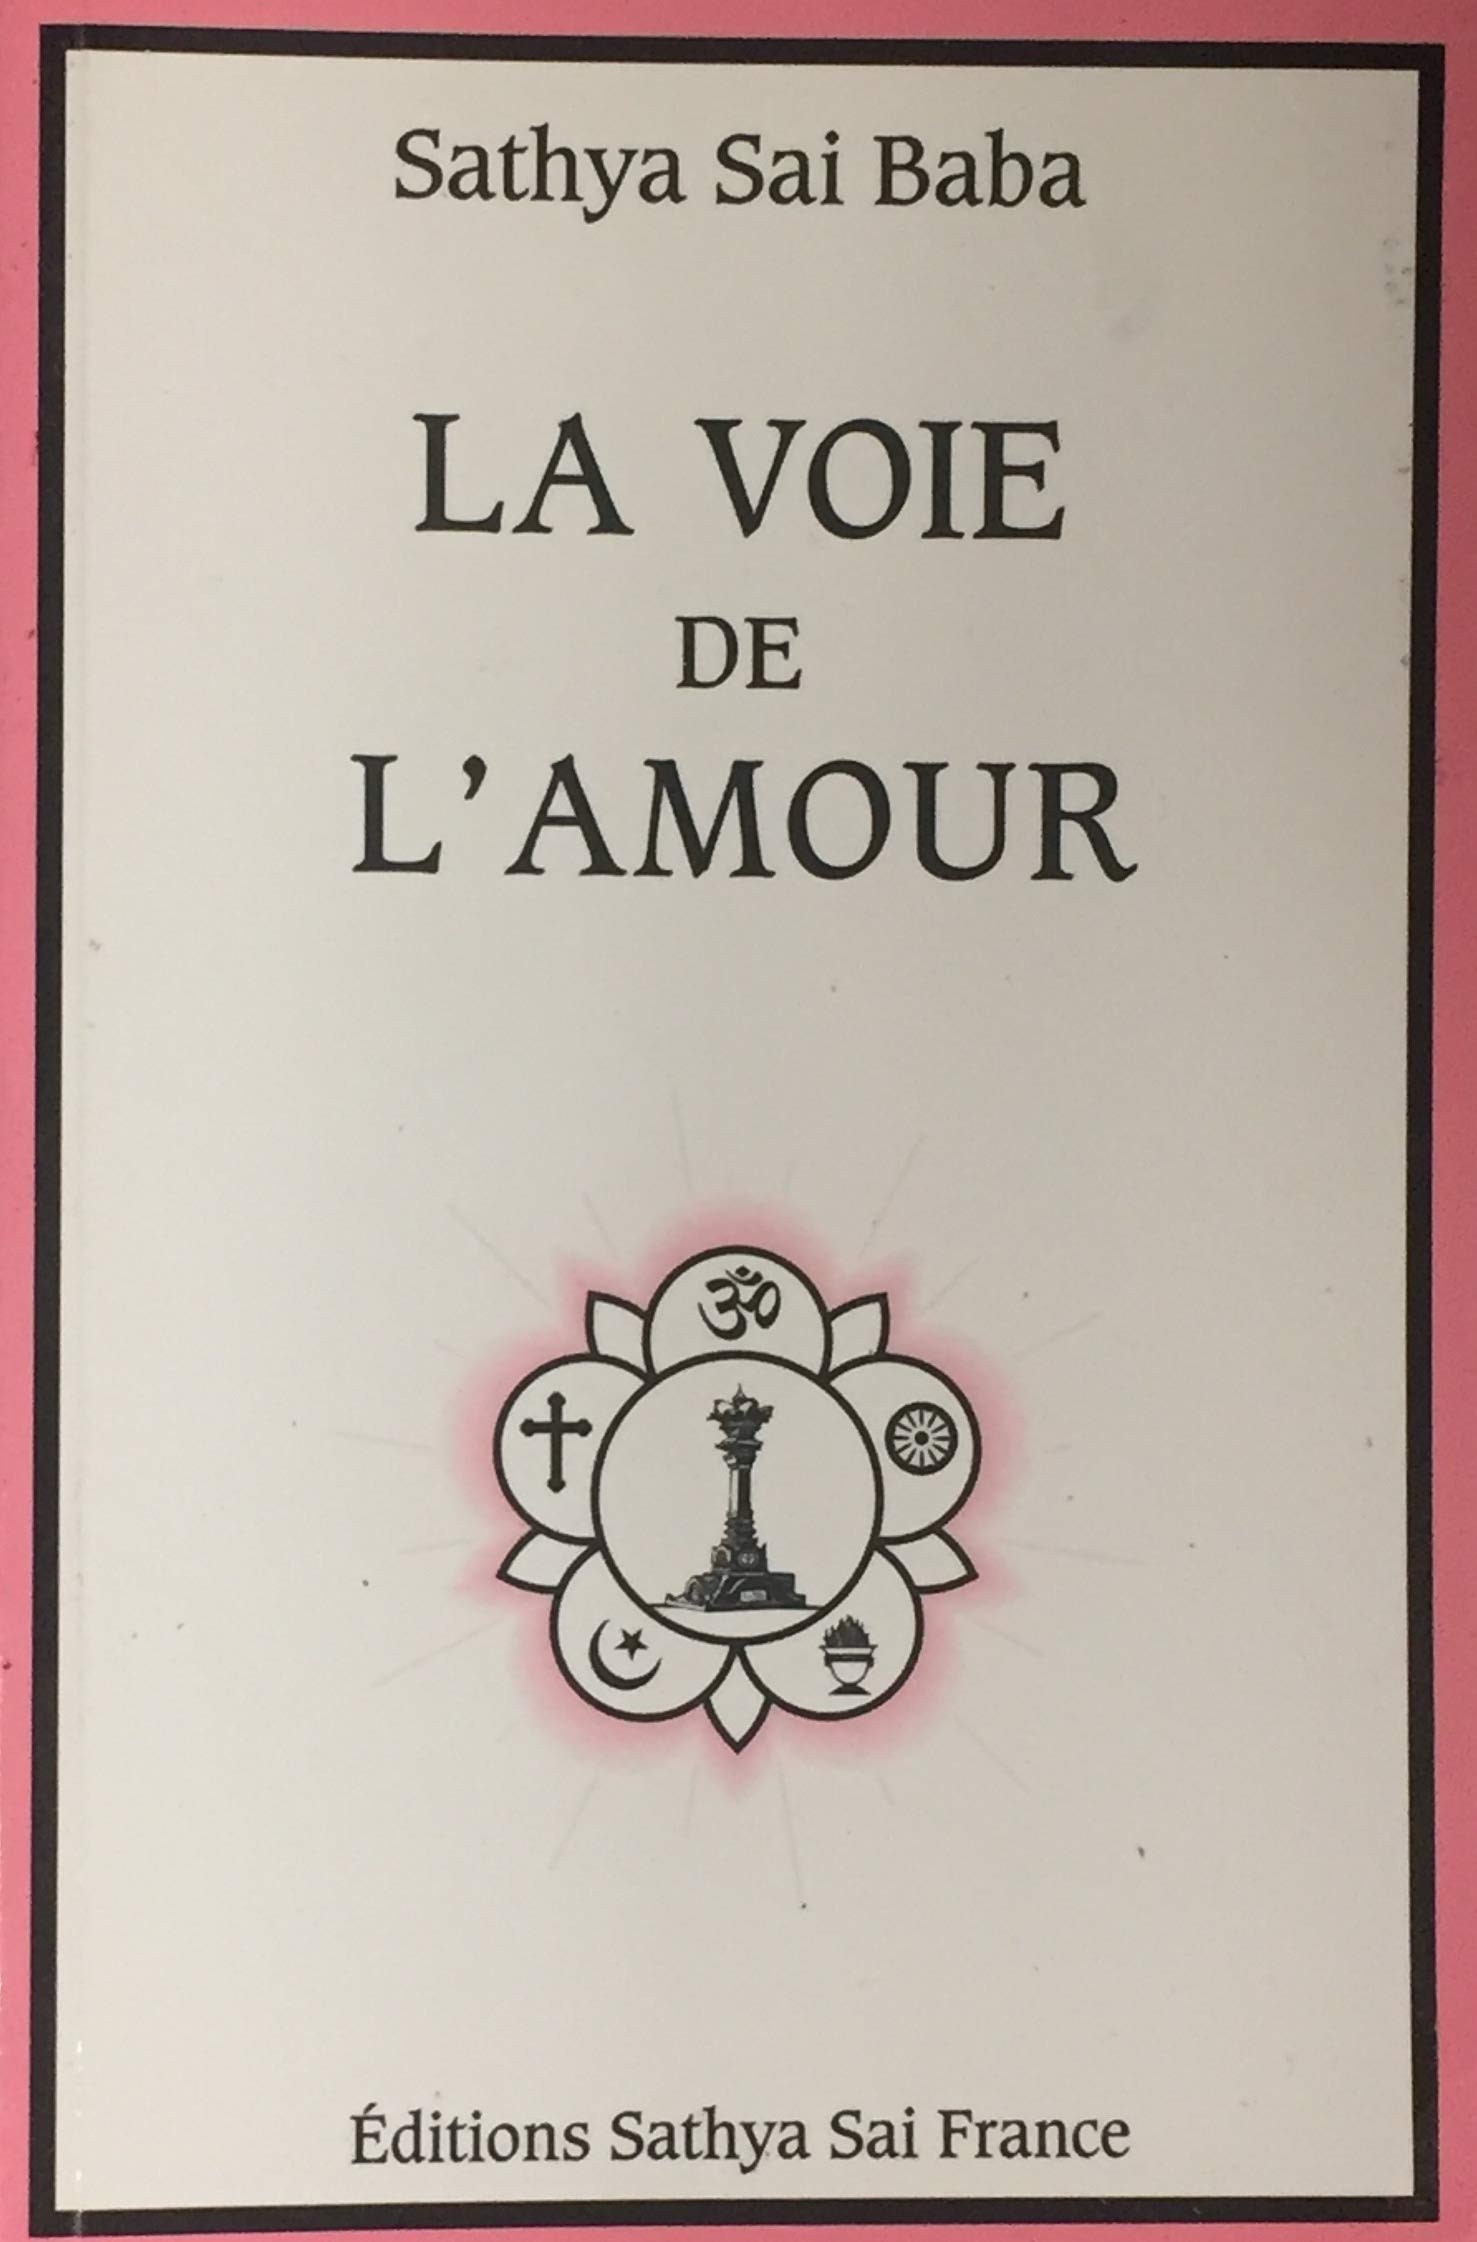 Livre ISBN 2909815102 La voie de l'amour (Sathya Sai Baba)